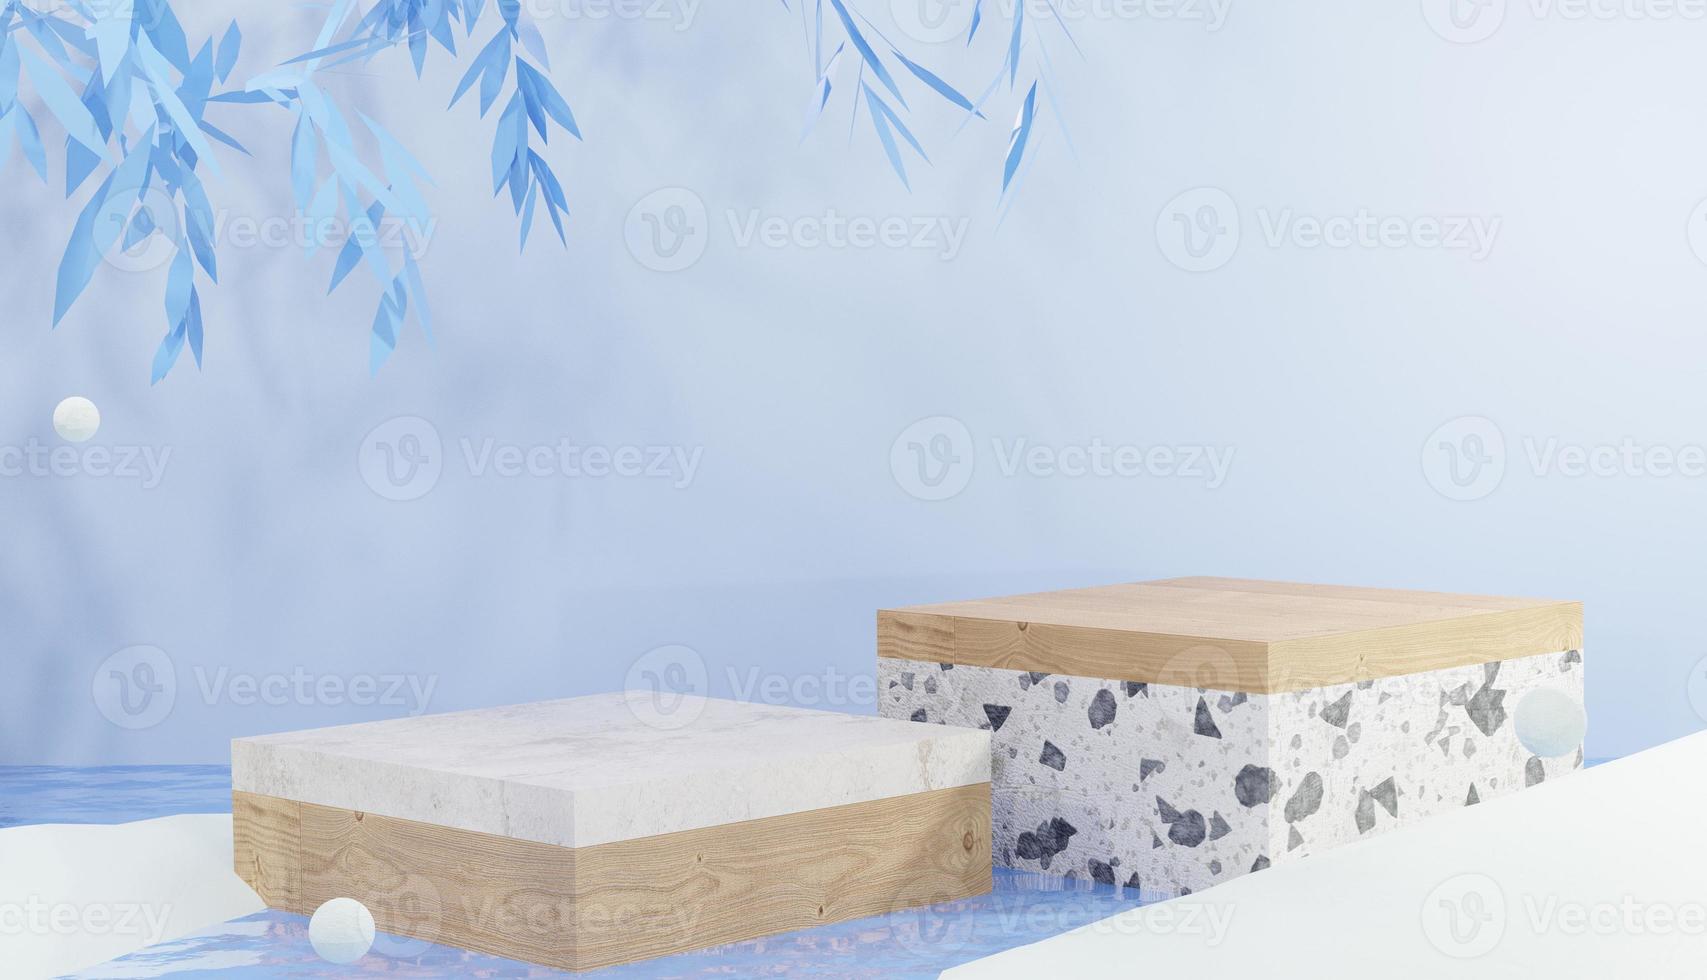 marmeren en houten vierkant podium 3d achtergrond op koud water omringd door sneeuw, winterthema foto